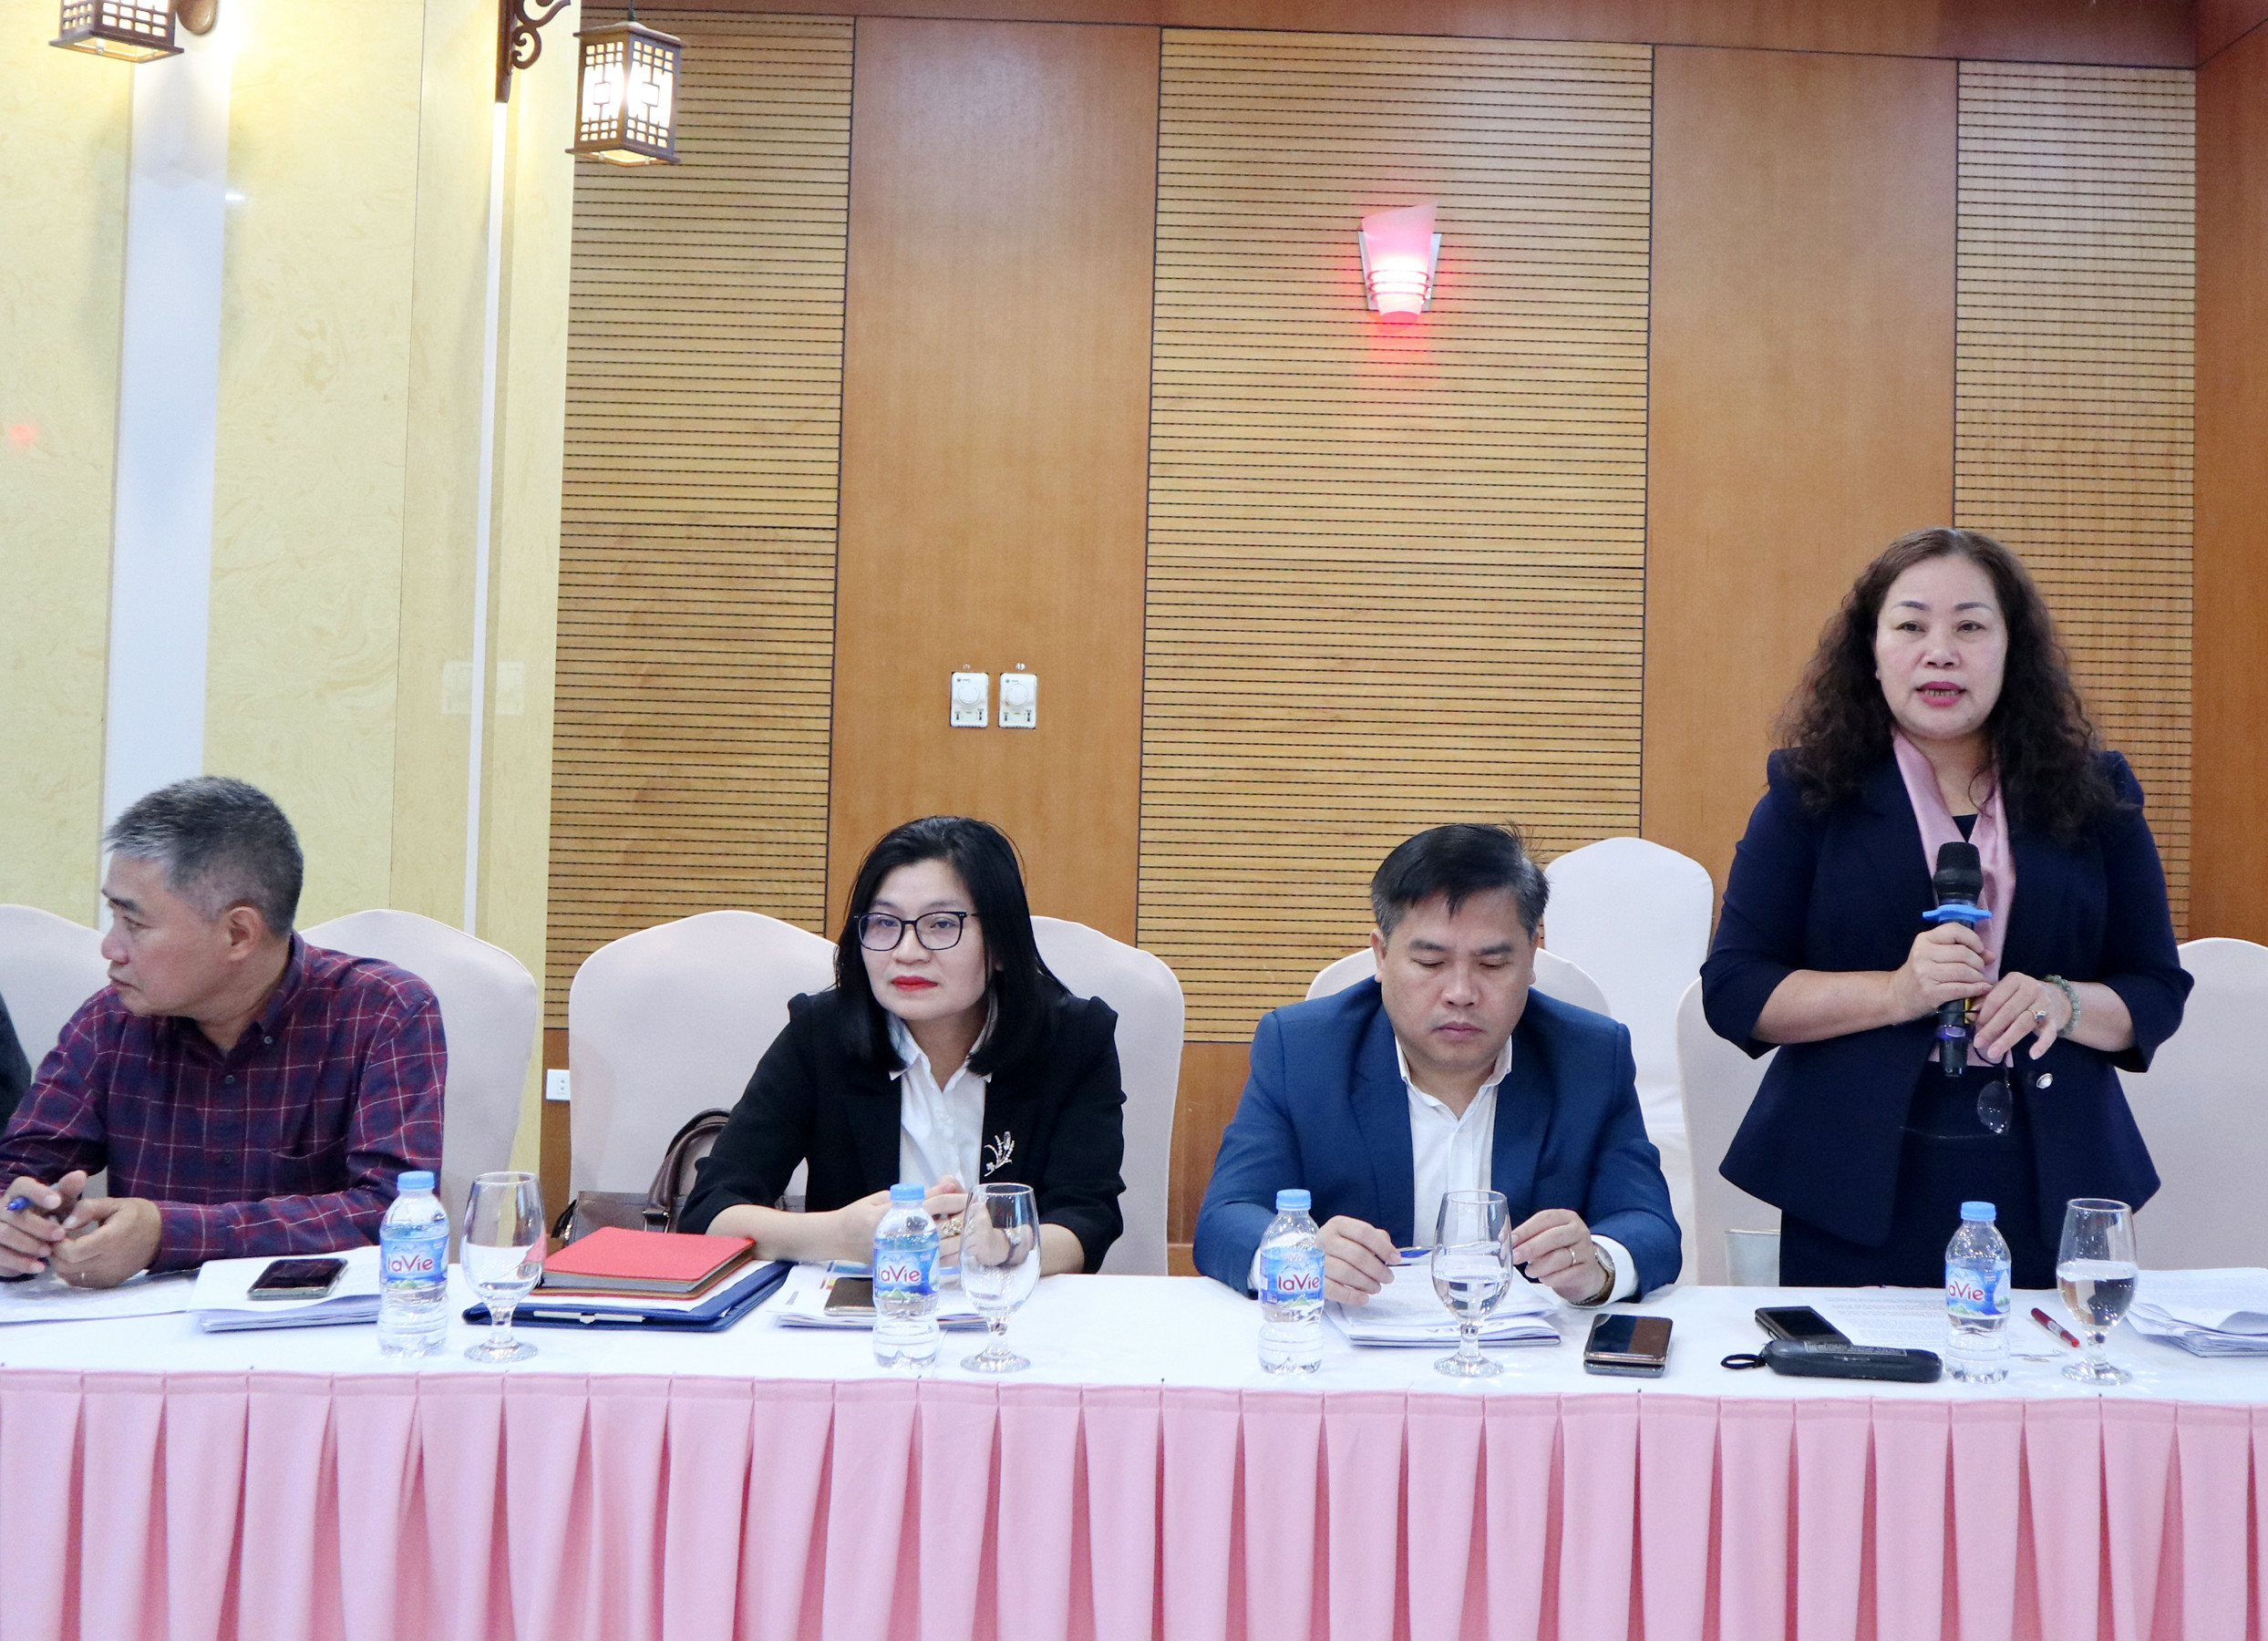 Đồng chí Nguyễn Thị Thu Hường, Ủy viên BTV, Trưởng ban Tuyên giáo Tỉnh ủy trình bày các đề xuất, kiến nghị về phát triển năng lượng tái tạo tại Nghệ An. Ảnh: Thanh Phúc